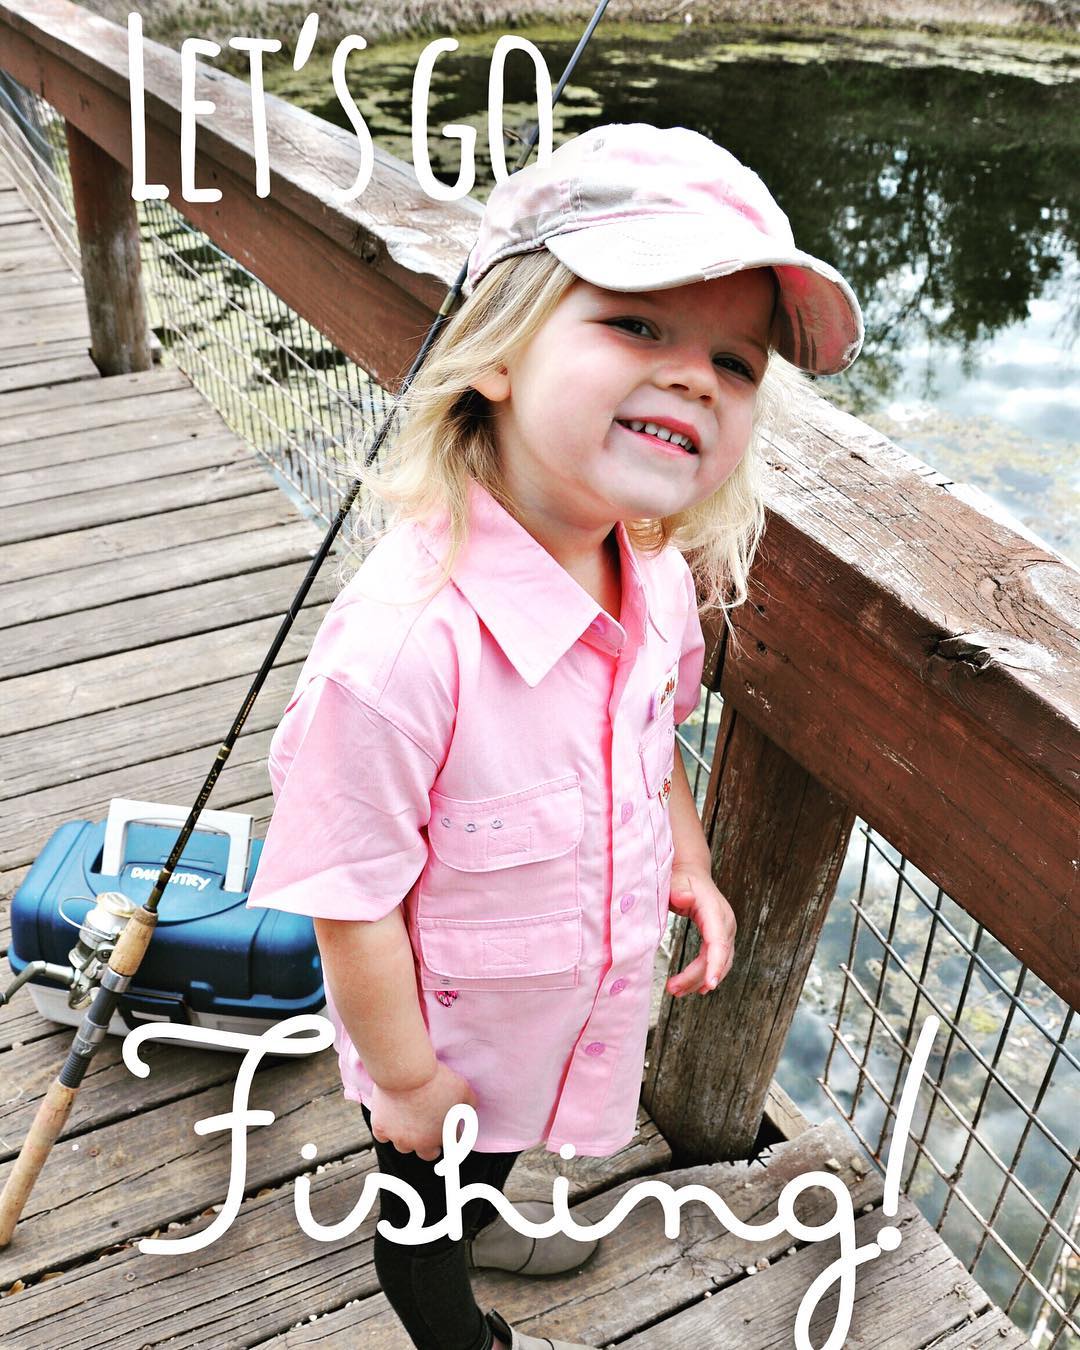  Toddler Fishing Shirt